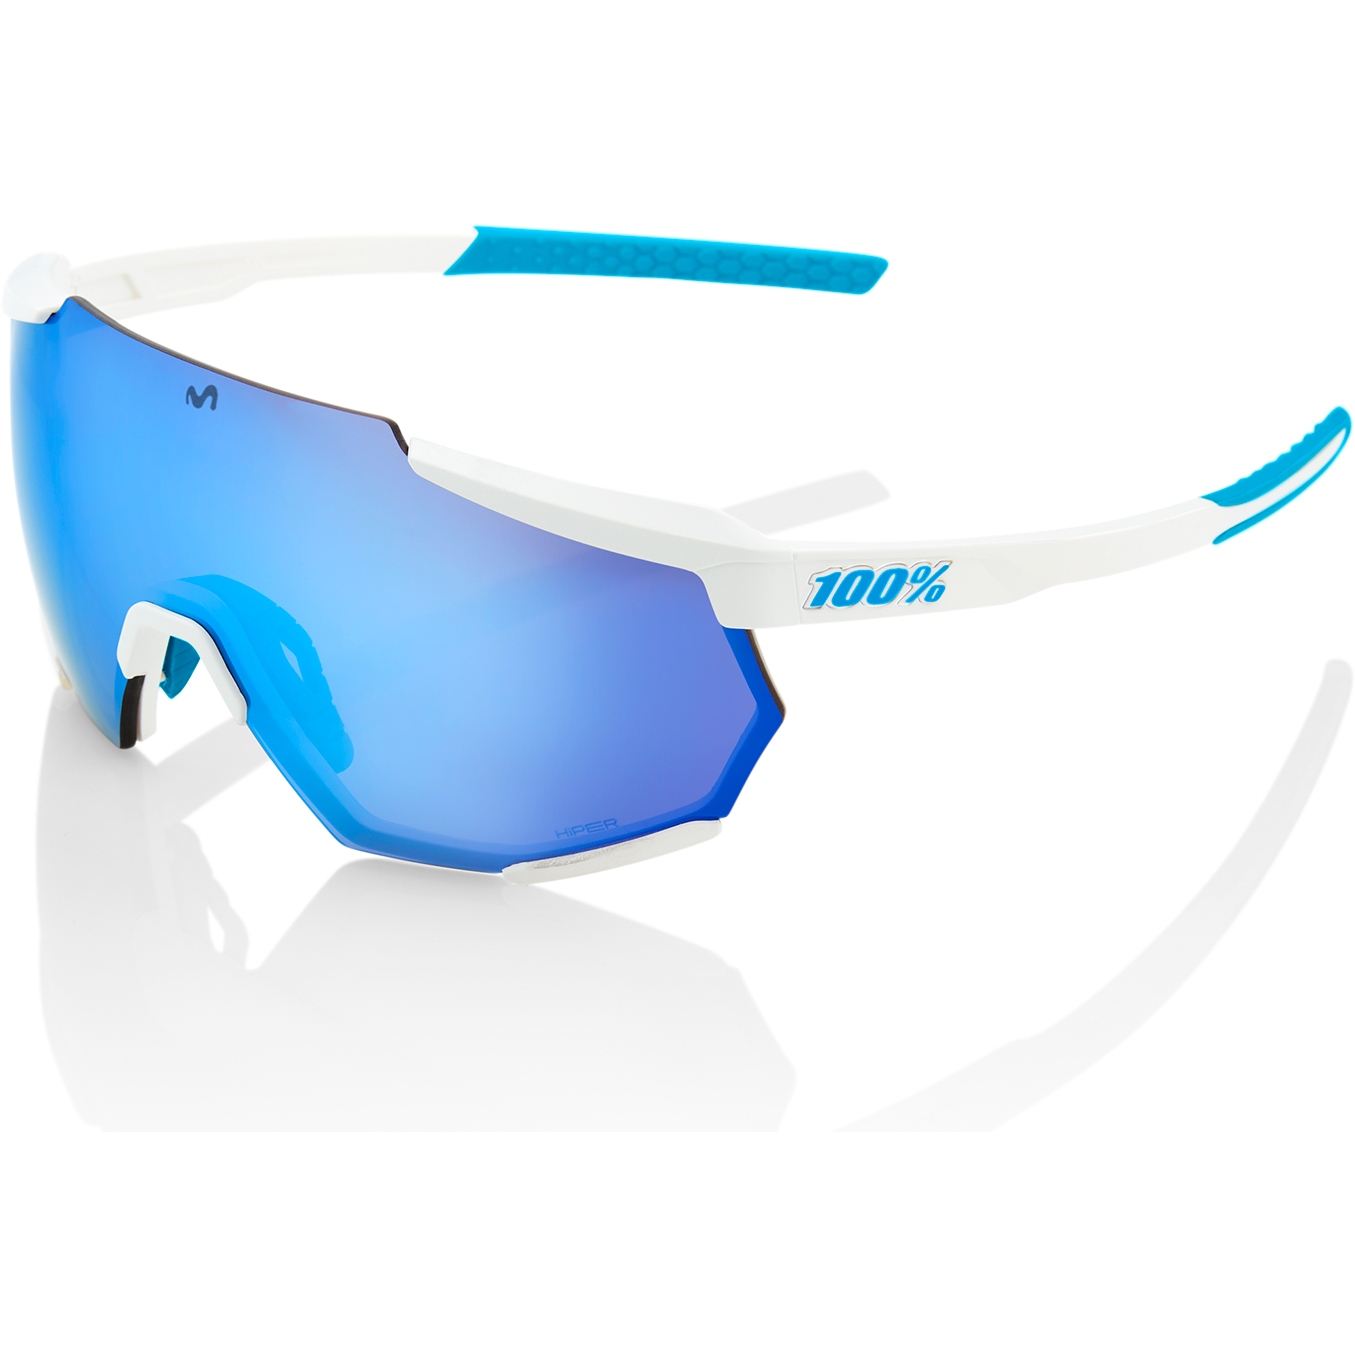 Bild von 100% Racetrap 3.0 Movistar Brille - HiPER Multilayer Mirror Lens - Team White / Blue + Clear